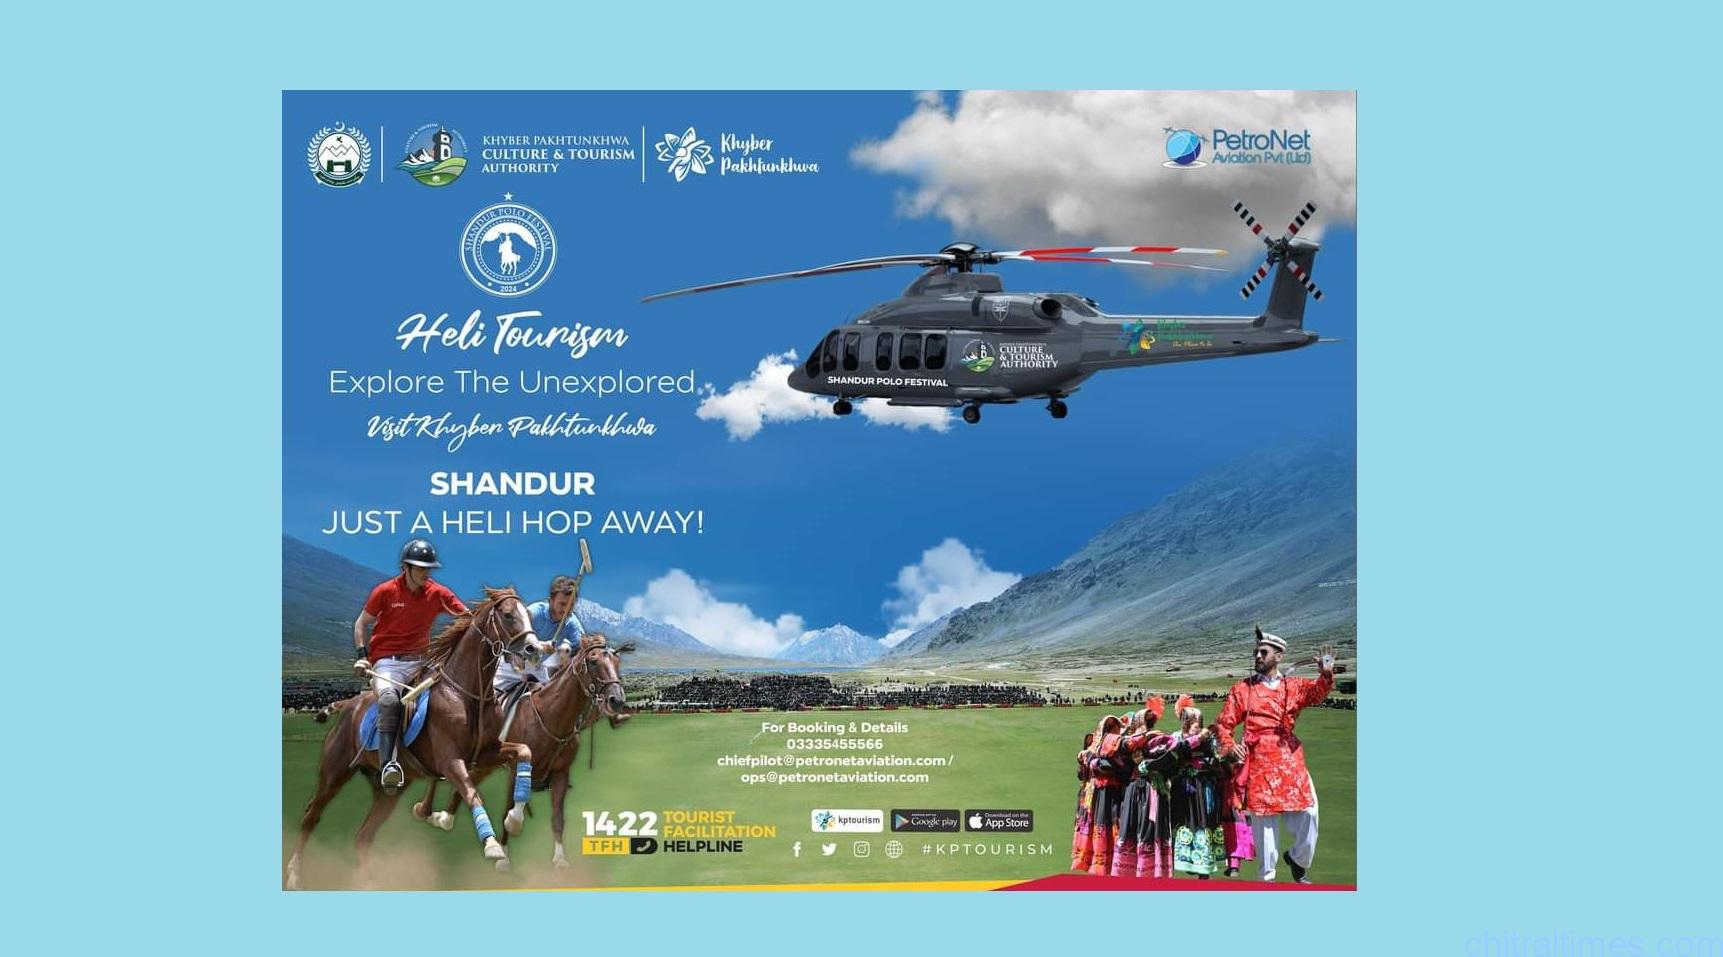 خیبرپختونخوا ٹورازم ڈپارٹمنٹ کا شندور فیسٹول و دیگر سیاحتی مقامات کے لئے ہیلی کاپٹر سروس شروع کرنے کا اعلان